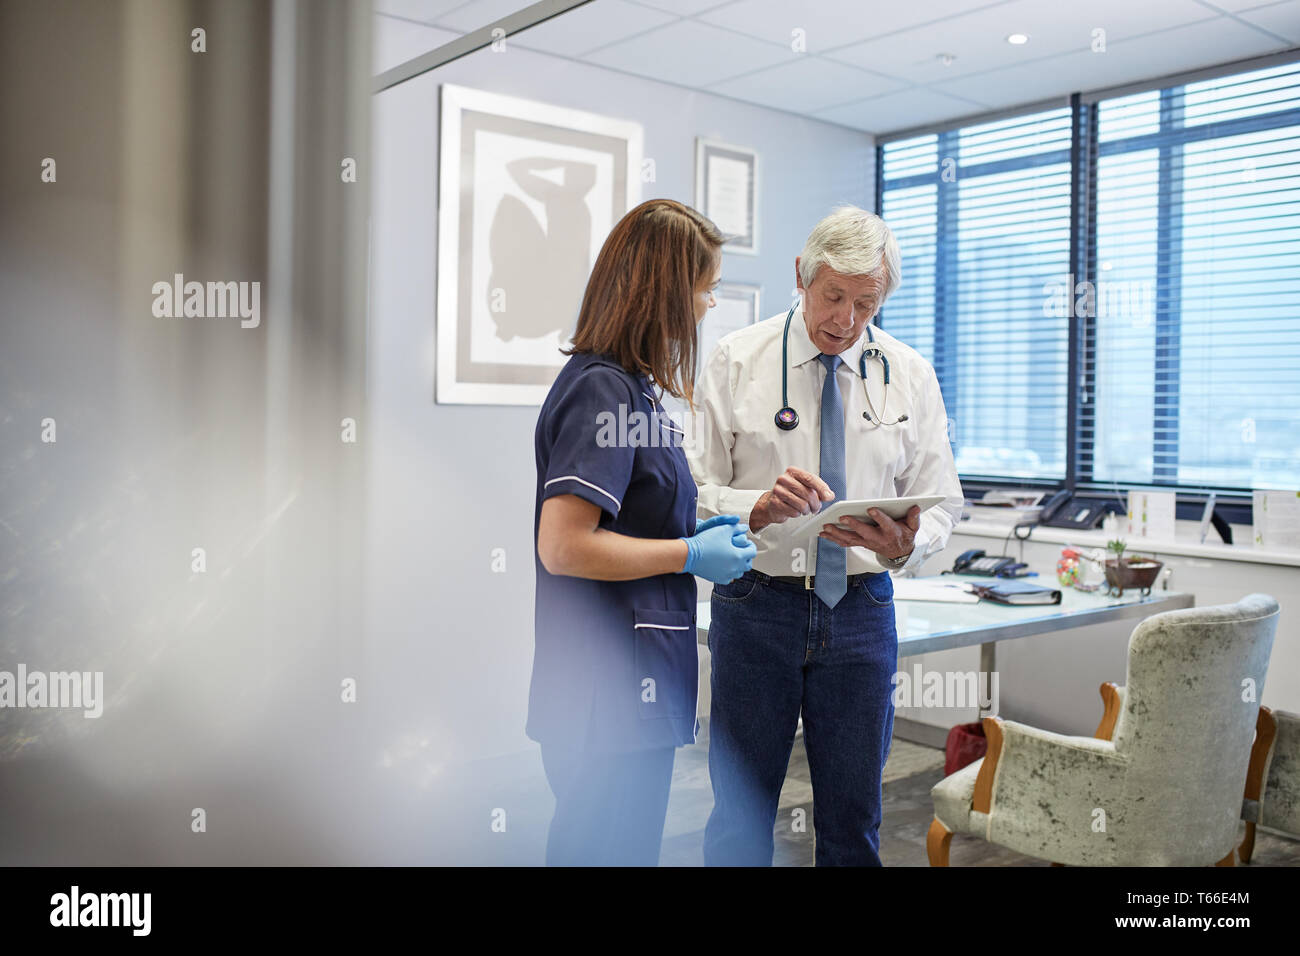 Doctor and nurse with digital tablet talking, conseil en pratique clinique office Banque D'Images